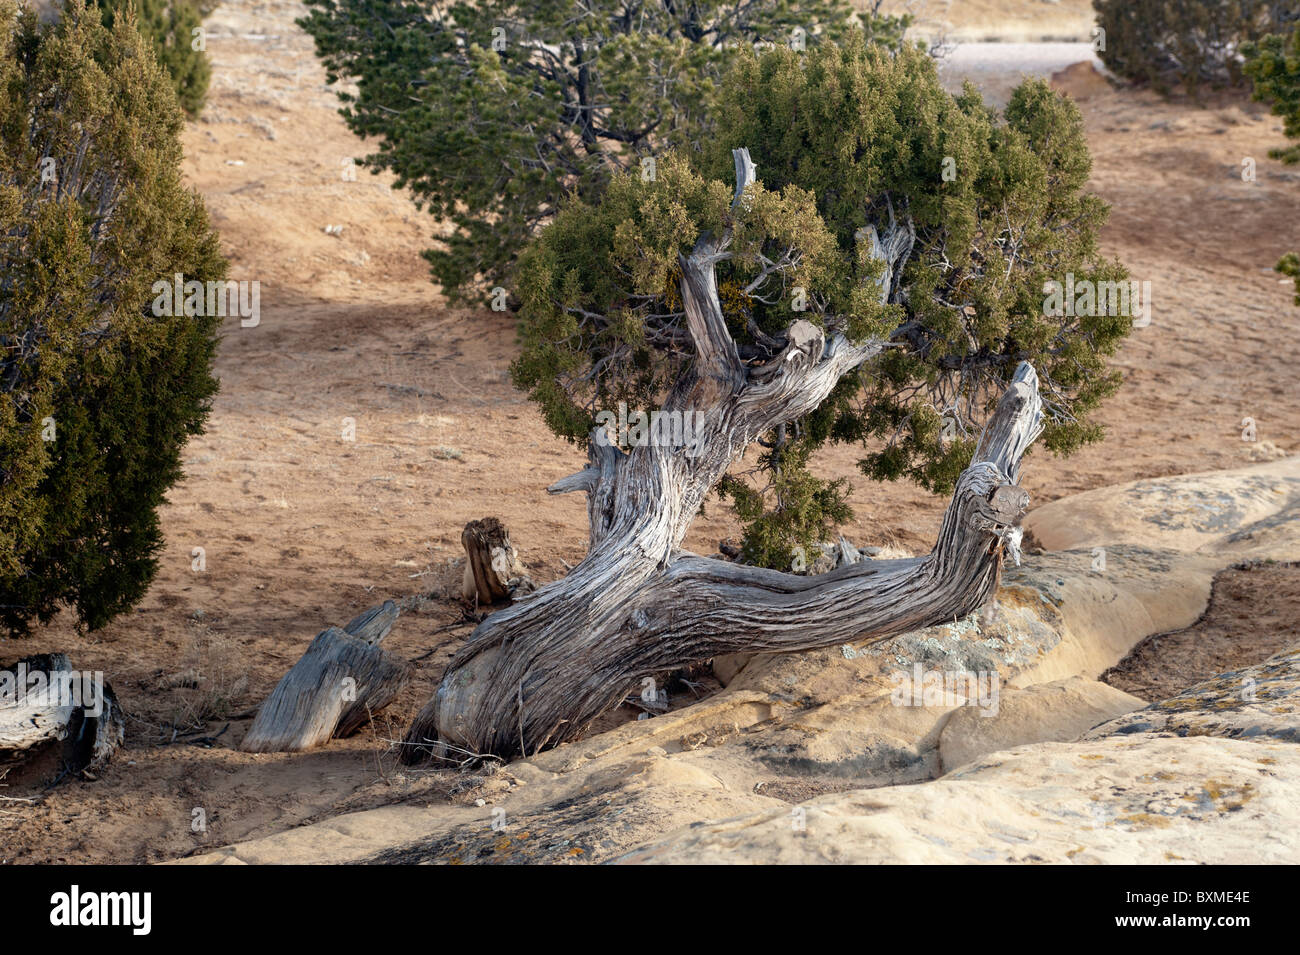 Un retorcido, nudosas viejo enebro se aferra a la vida en el duro ambiente árido de El Malpais National Monument en Nuevo México Foto de stock